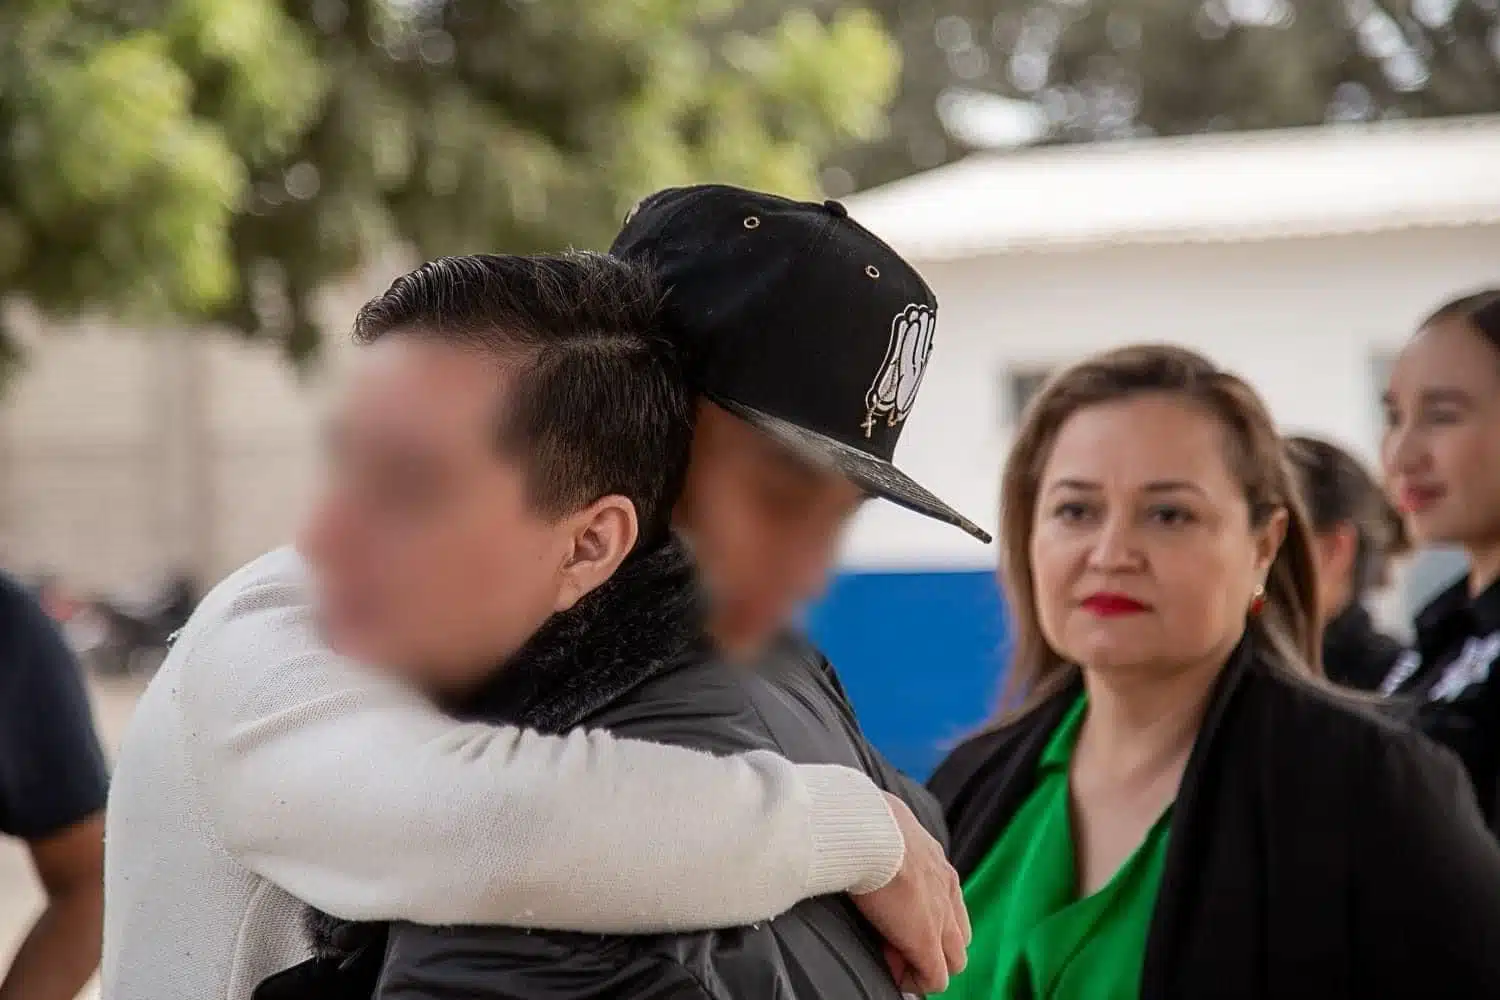 Dulce Irene abrazando a su familia tras haber estado desaparecida 14 años